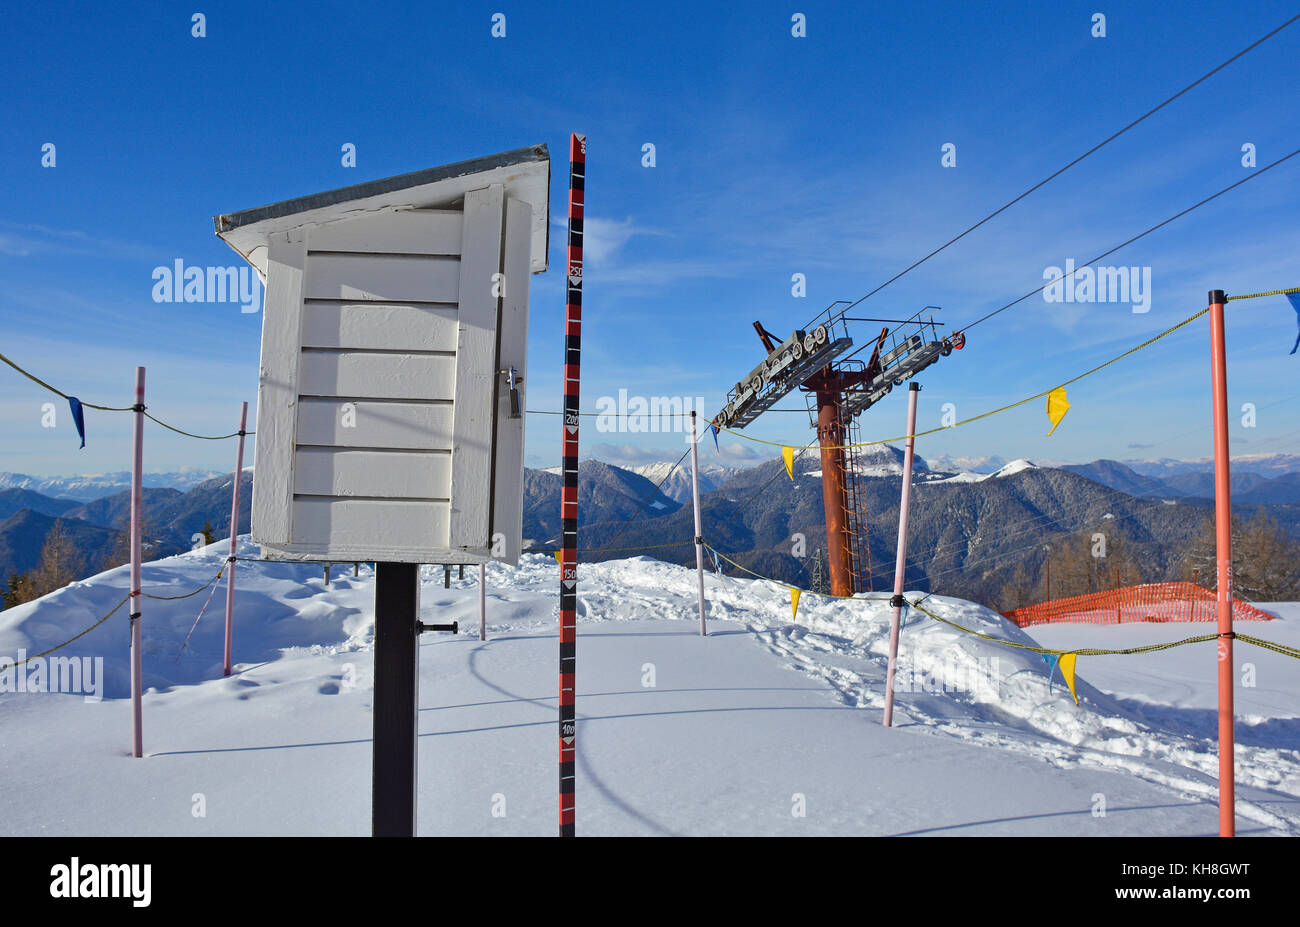 Une station météo dans la neige sur le monte lussari dans la région de Frioul-Vénétie julienne, au nord est de l'italie Banque D'Images